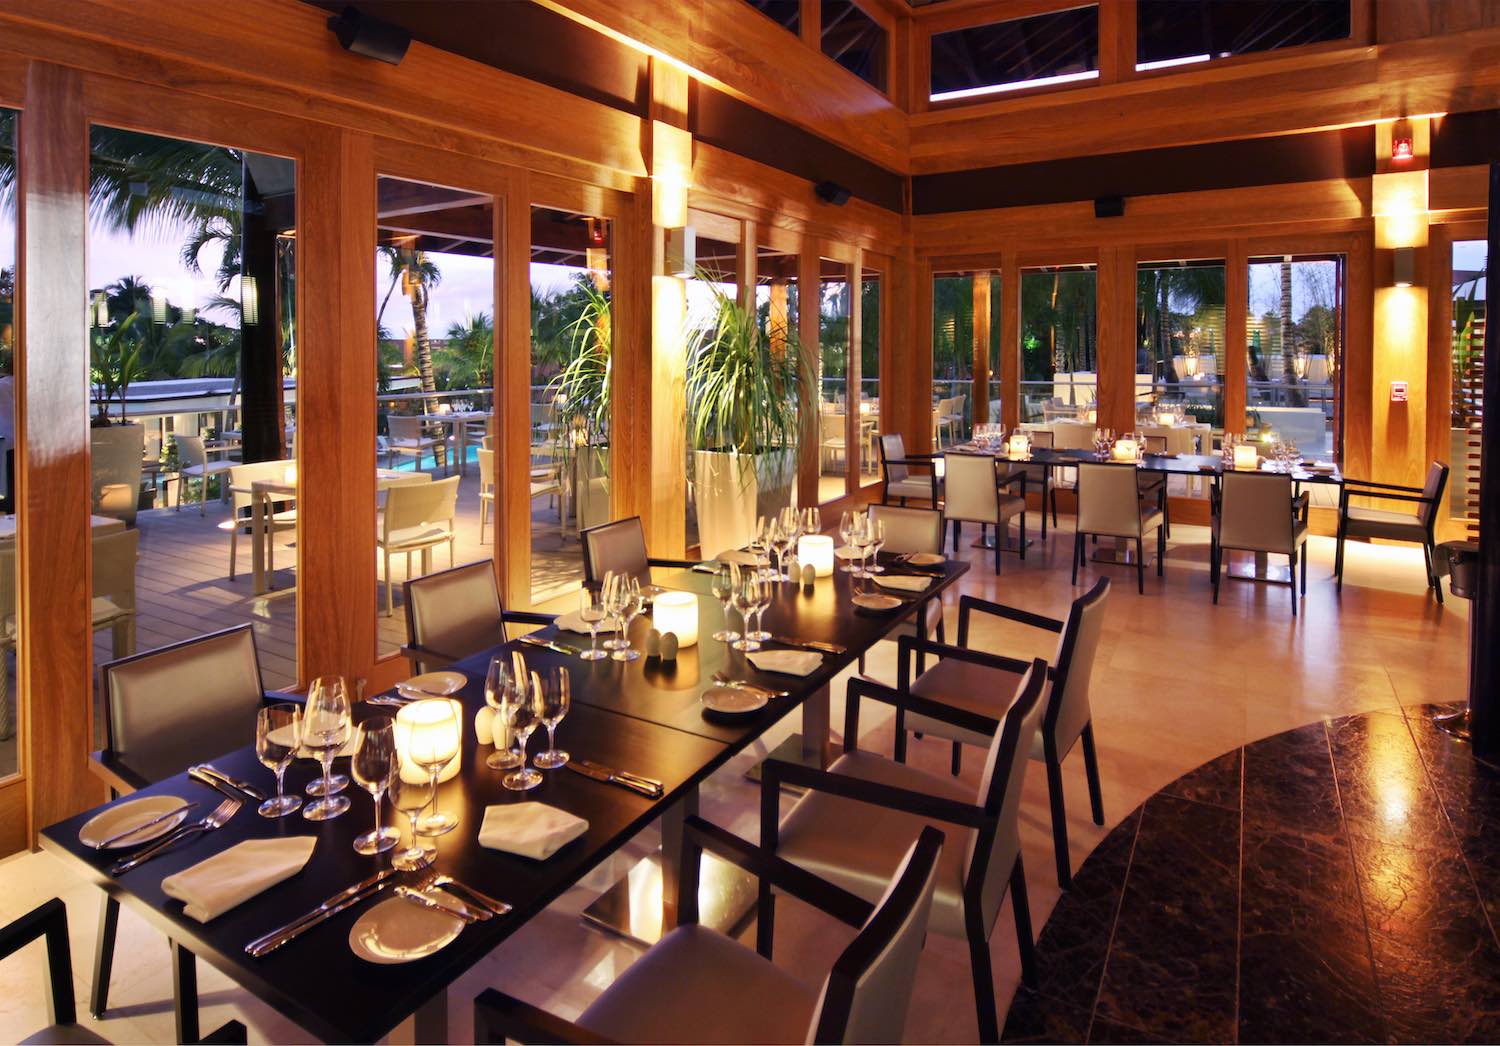 Fine Dining at La Cana Restaurant at Casa de Campo Resort and Villa in The Dominican Republic.